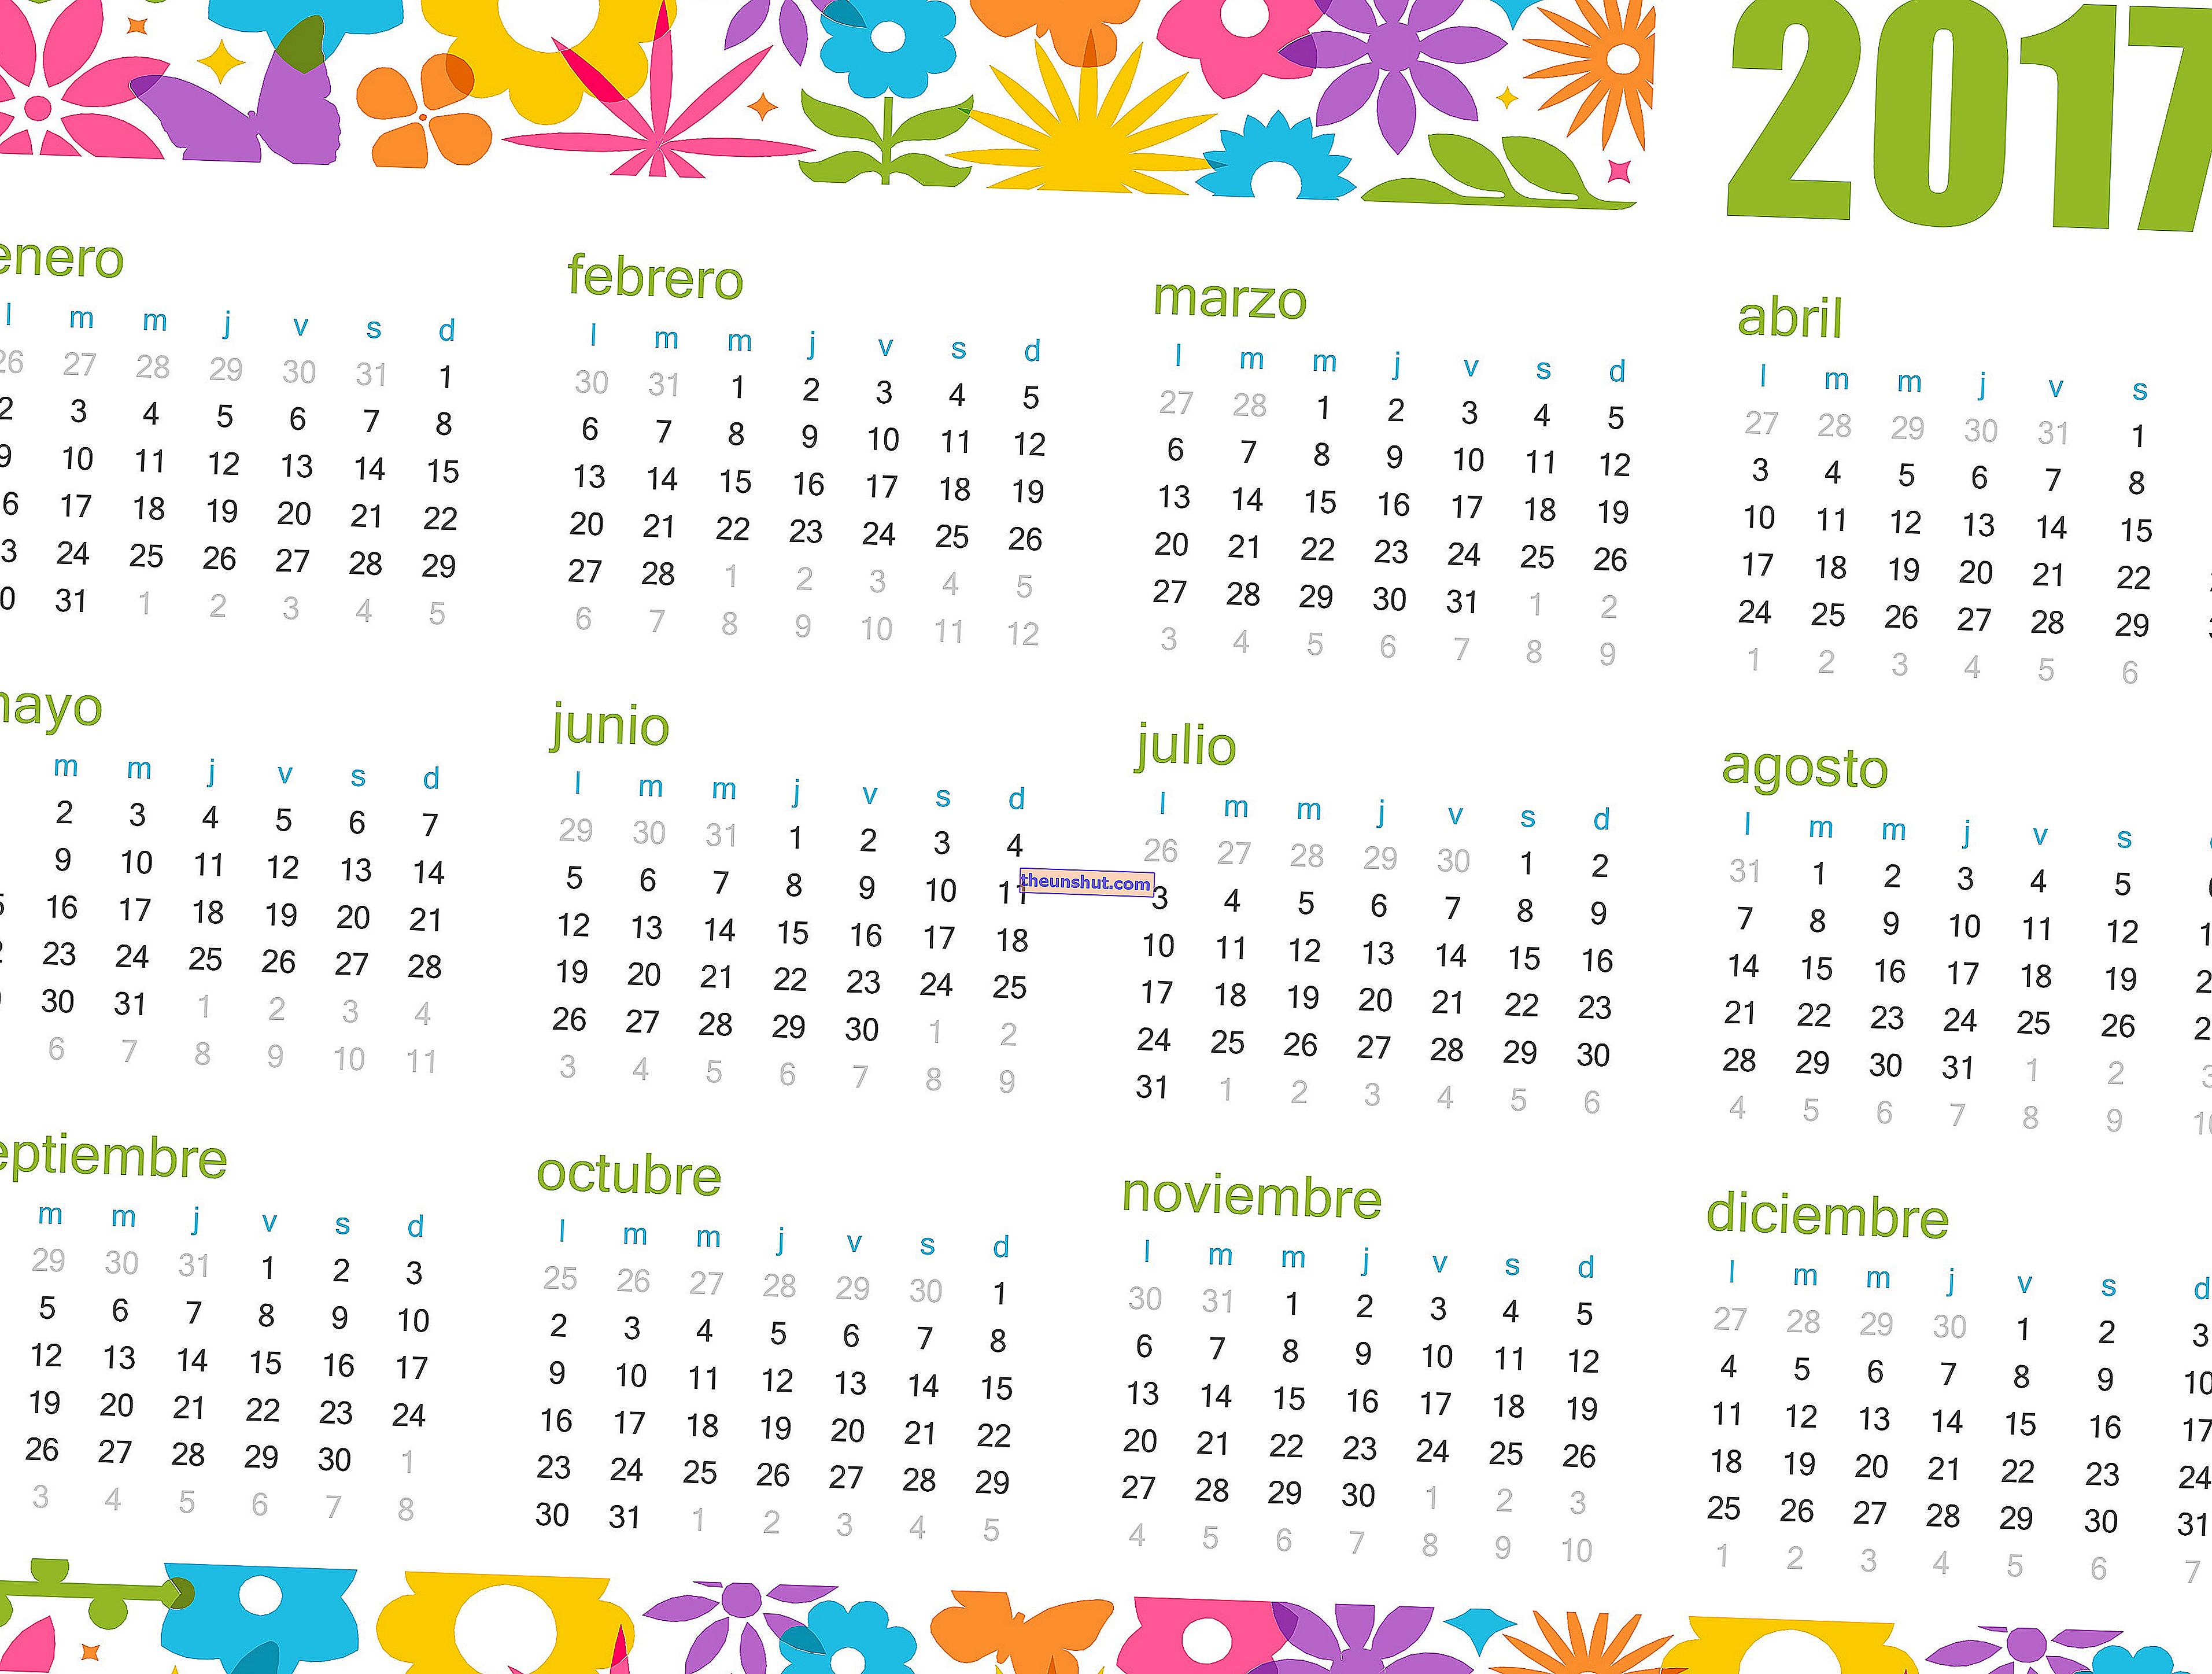 kalendar 2017 cvijeće